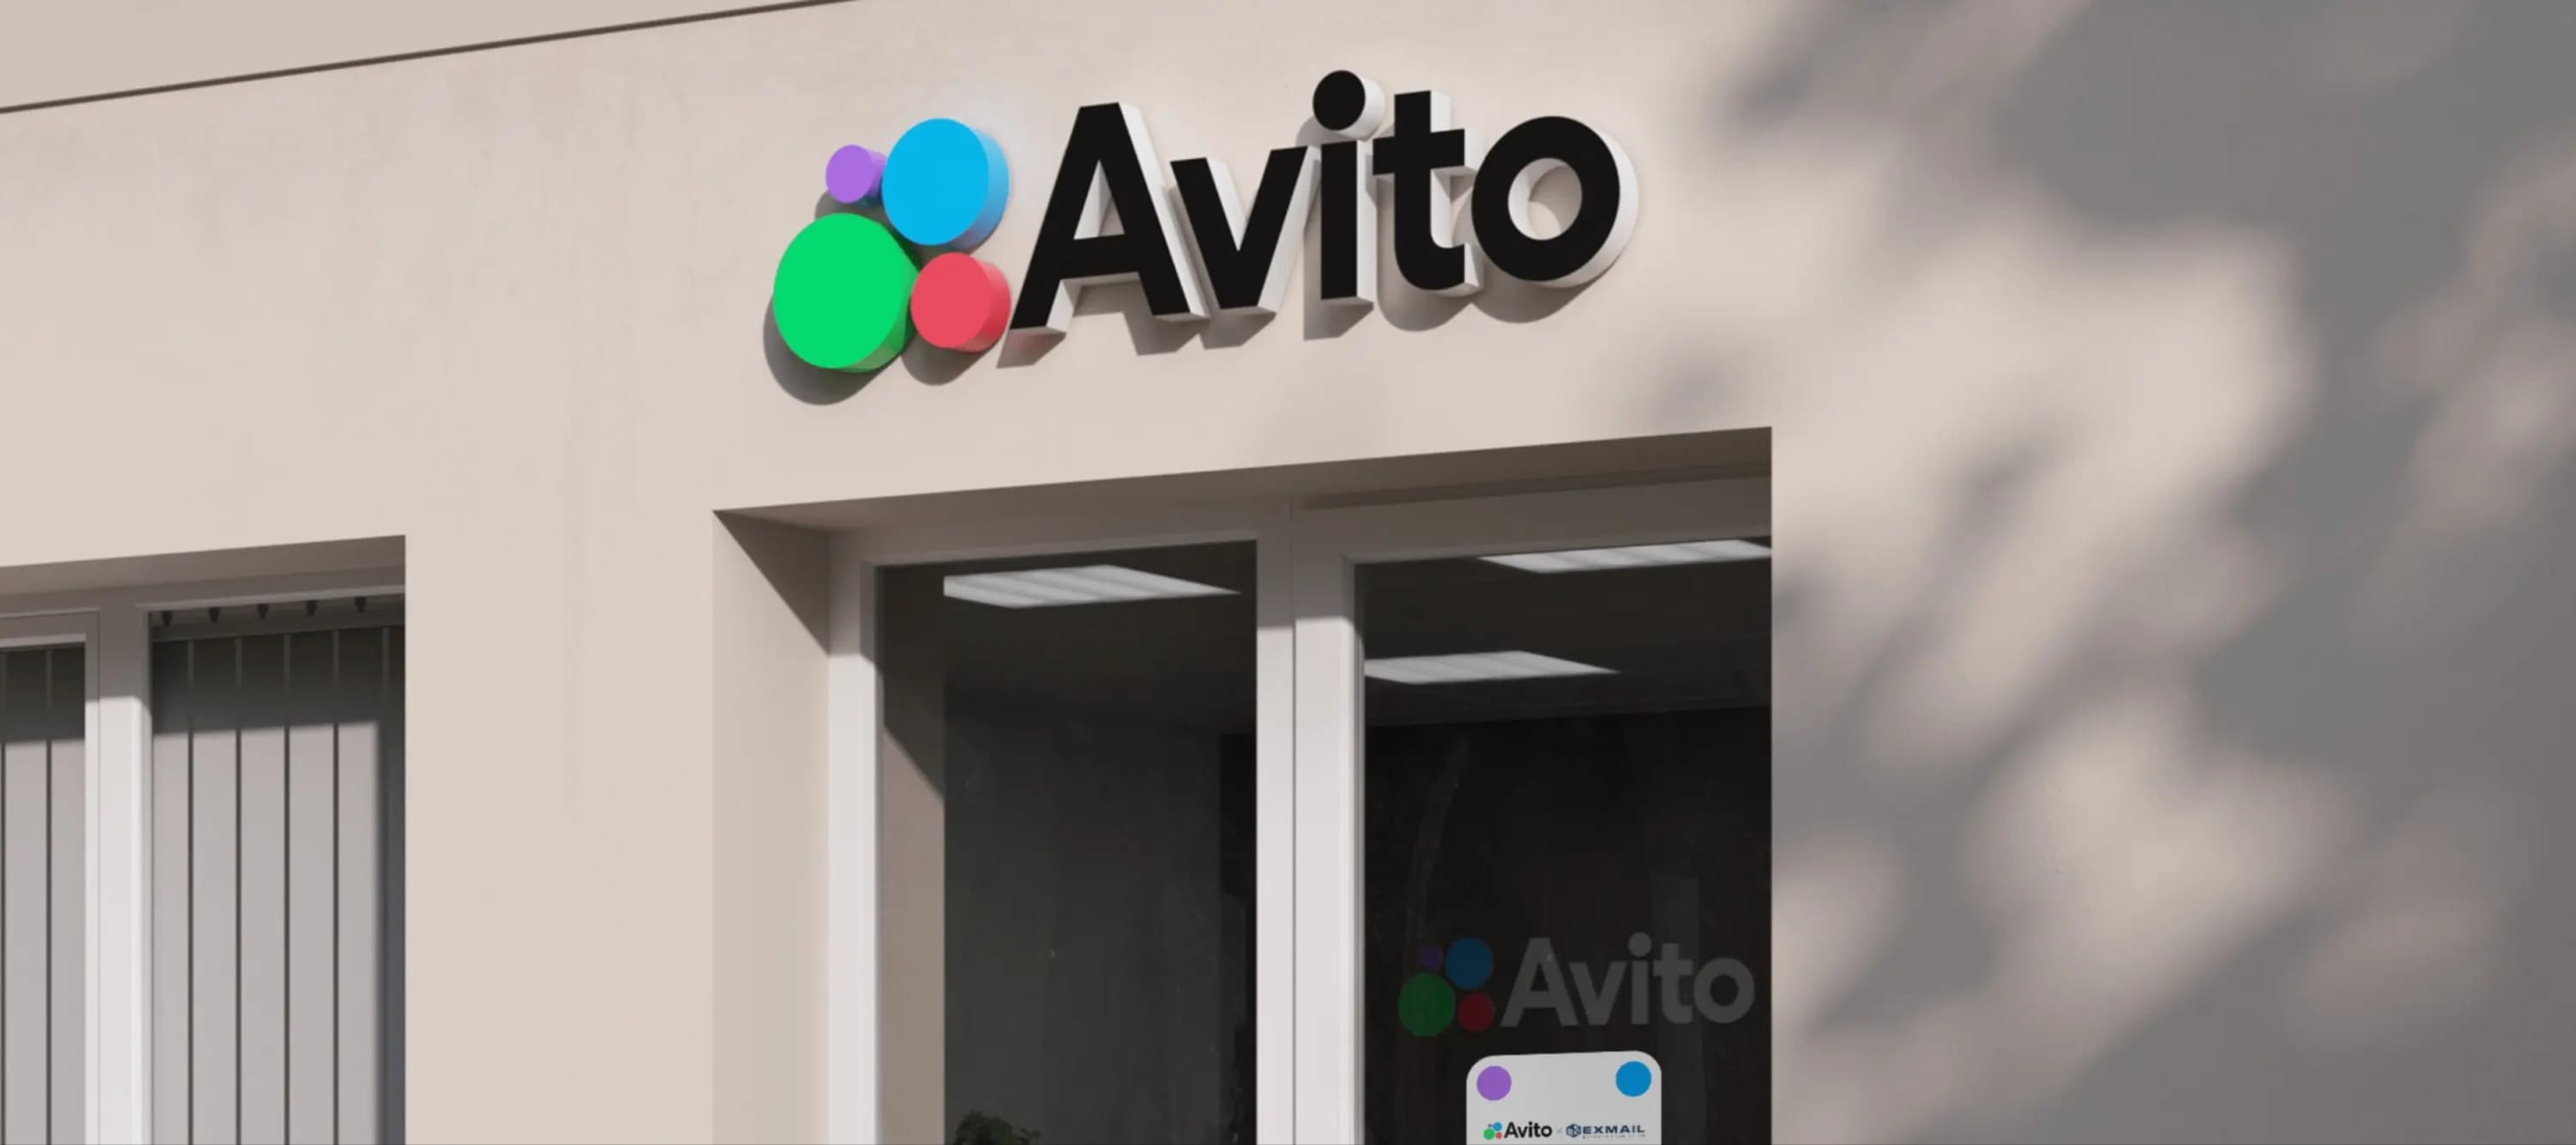 Фото новости: "«Авито доставка» предупредила пользователей о повышении комиссии"